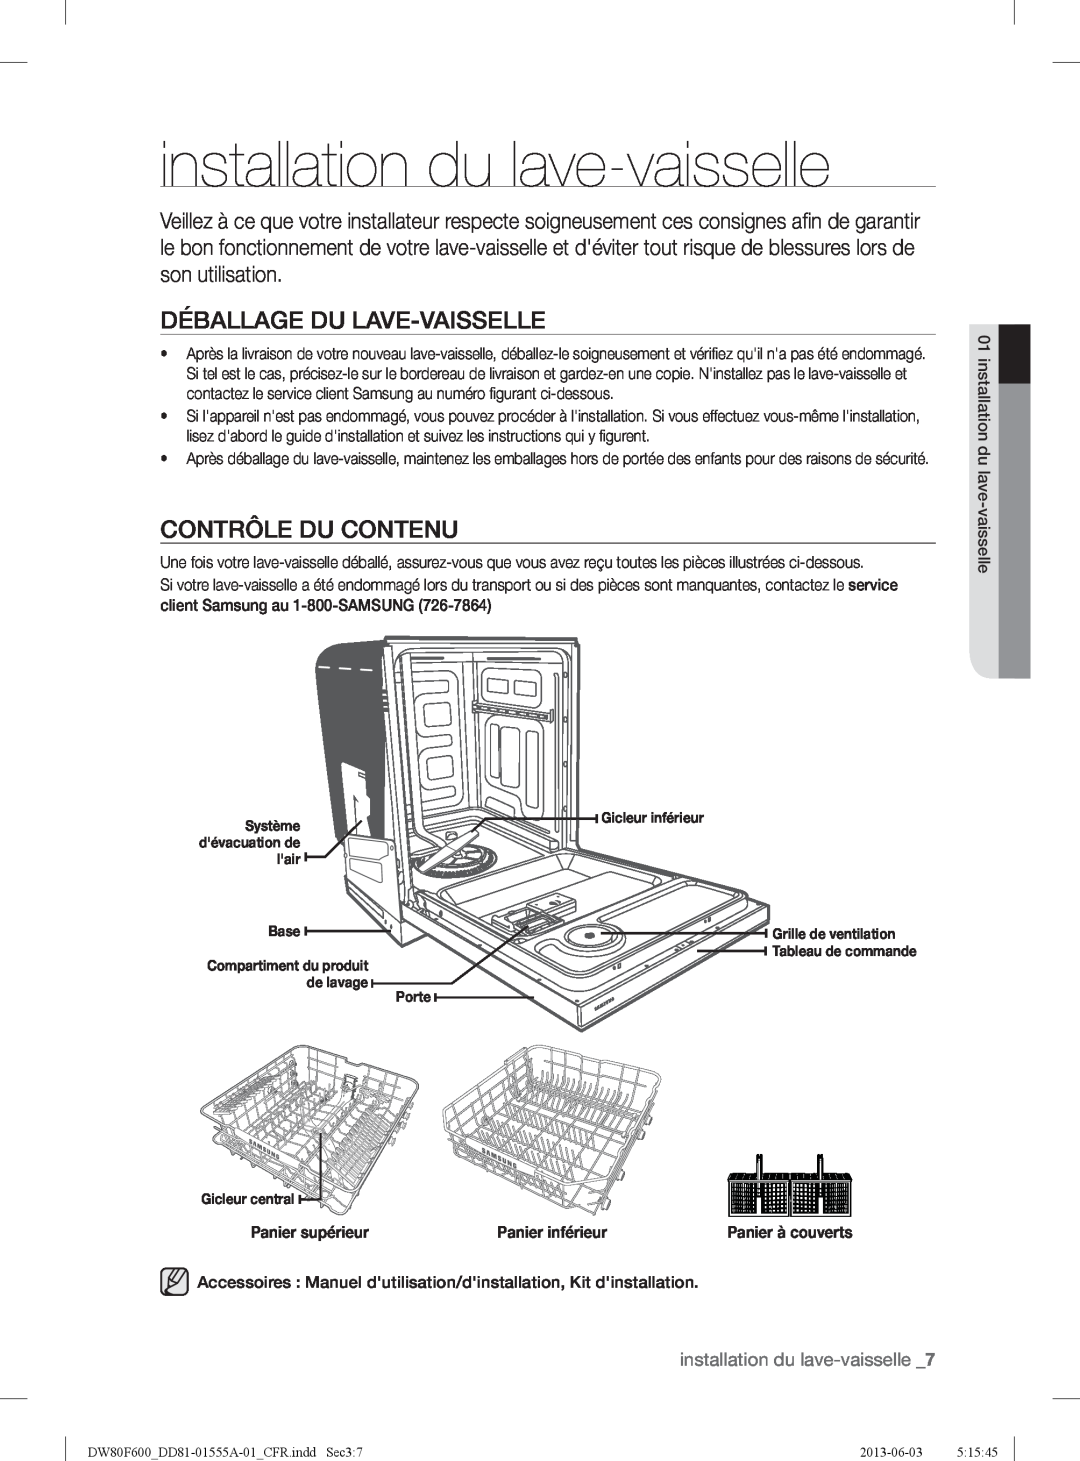 Samsung DW80F600UTS installation du lave-vaisselle, Déballage Du Lave-Vaisselle, Contrôle Du Contenu, Panier supérieur 